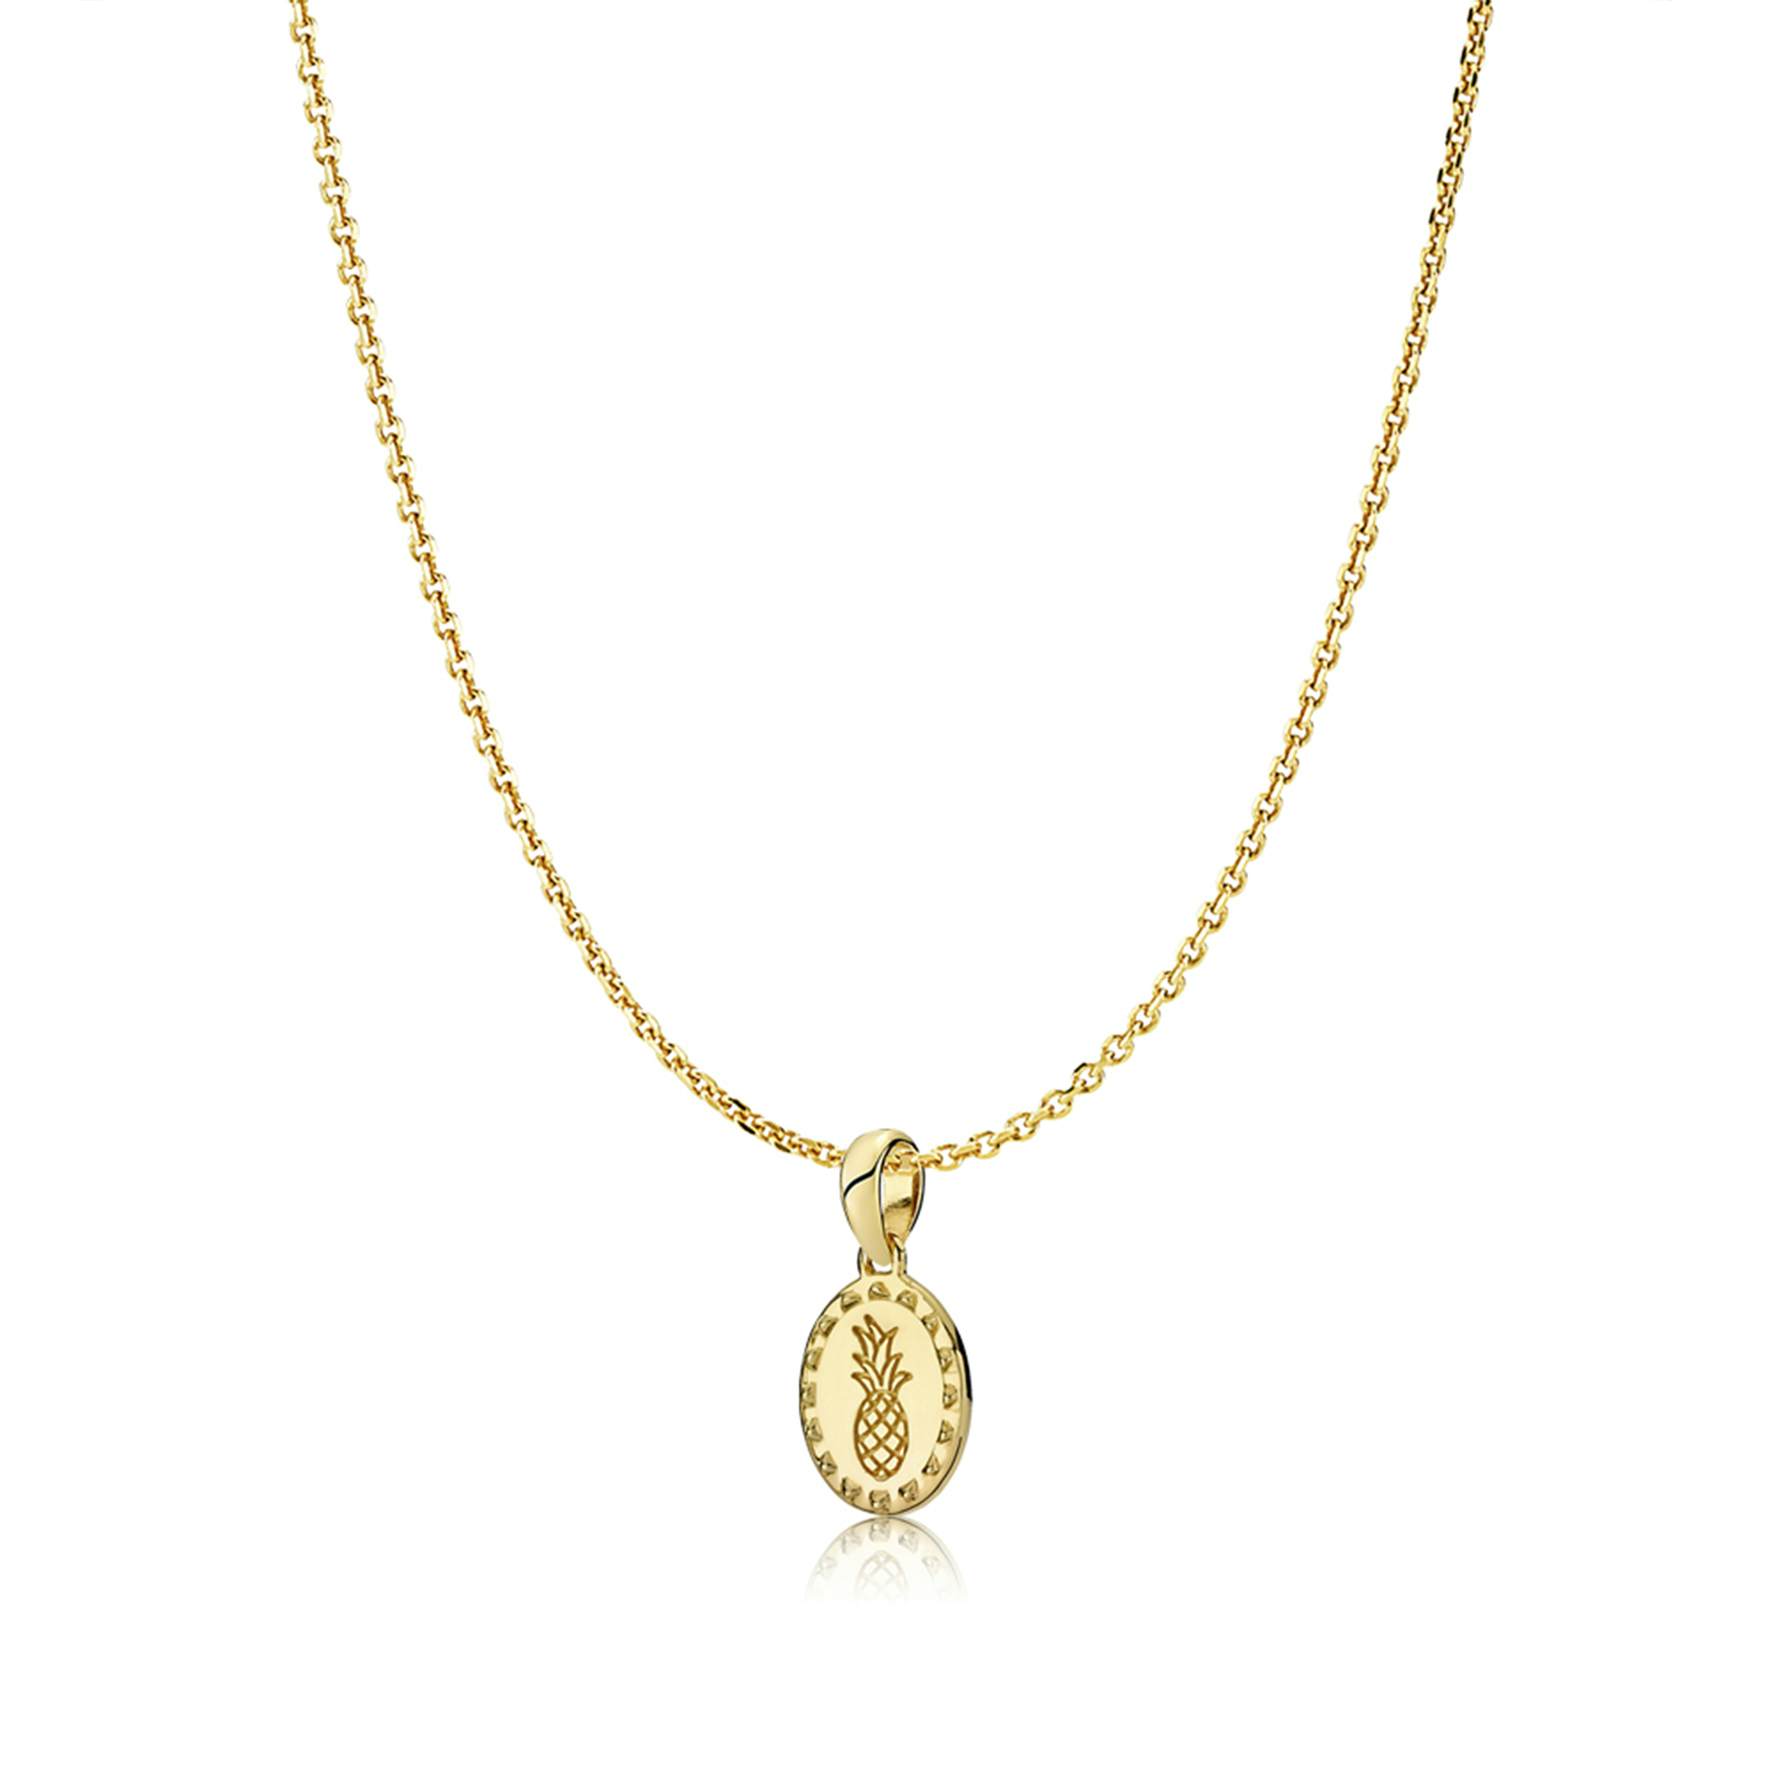 Anna By Sistie Round Pendant Necklace fra Sistie i Forgyldt-Sølv Sterling 925